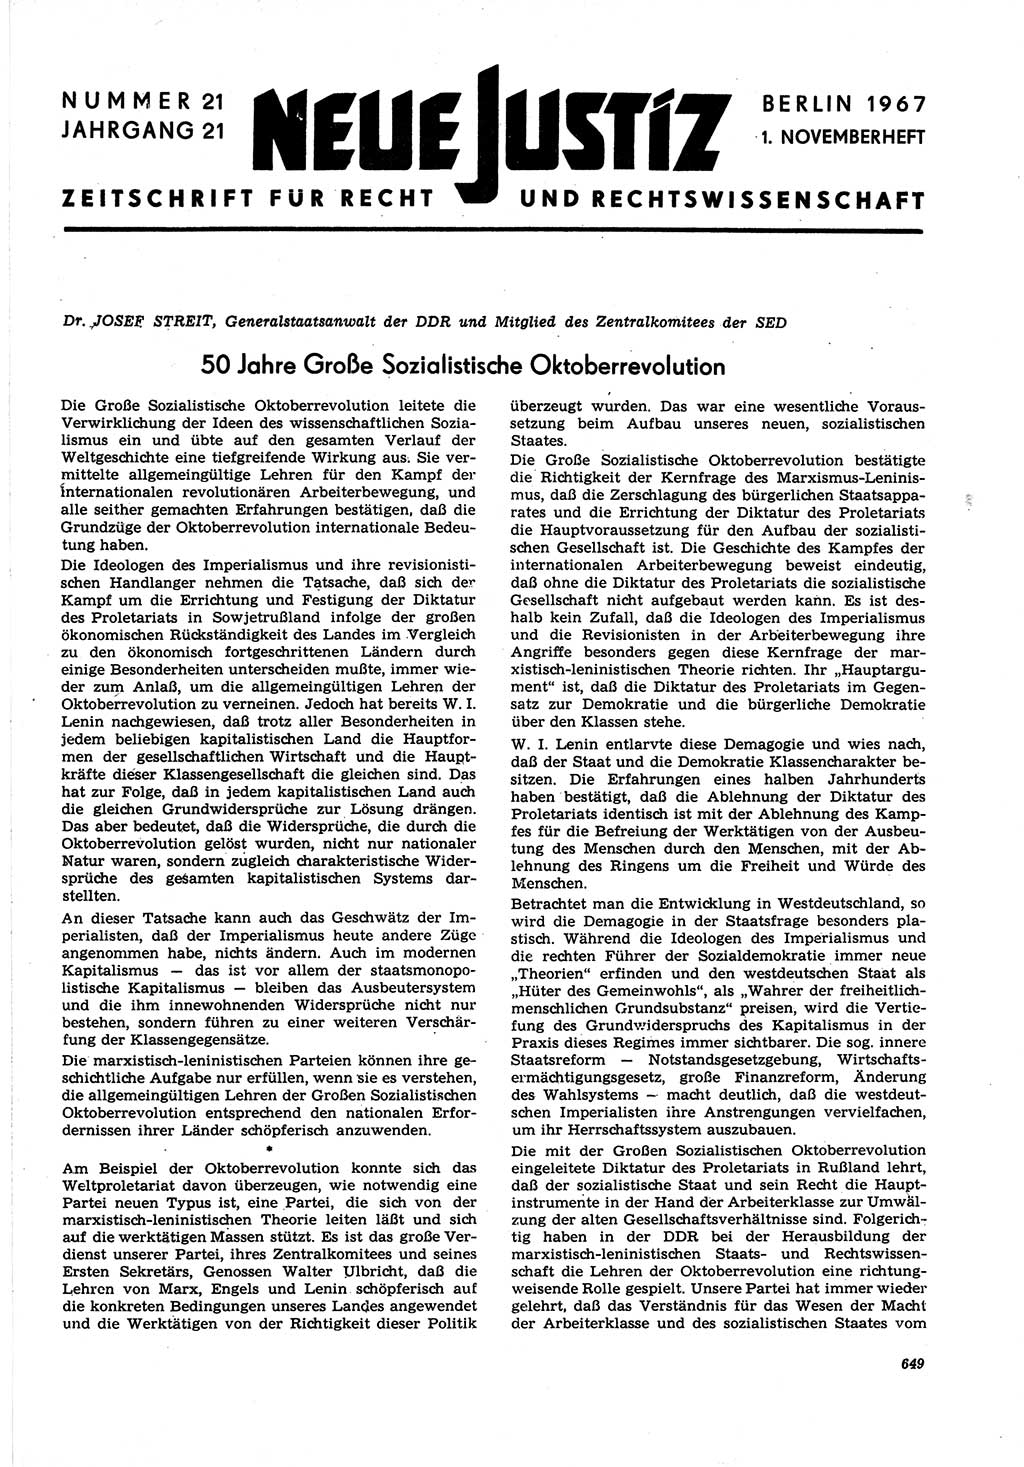 Neue Justiz (NJ), Zeitschrift für Recht und Rechtswissenschaft [Deutsche Demokratische Republik (DDR)], 21. Jahrgang 1967, Seite 649 (NJ DDR 1967, S. 649)